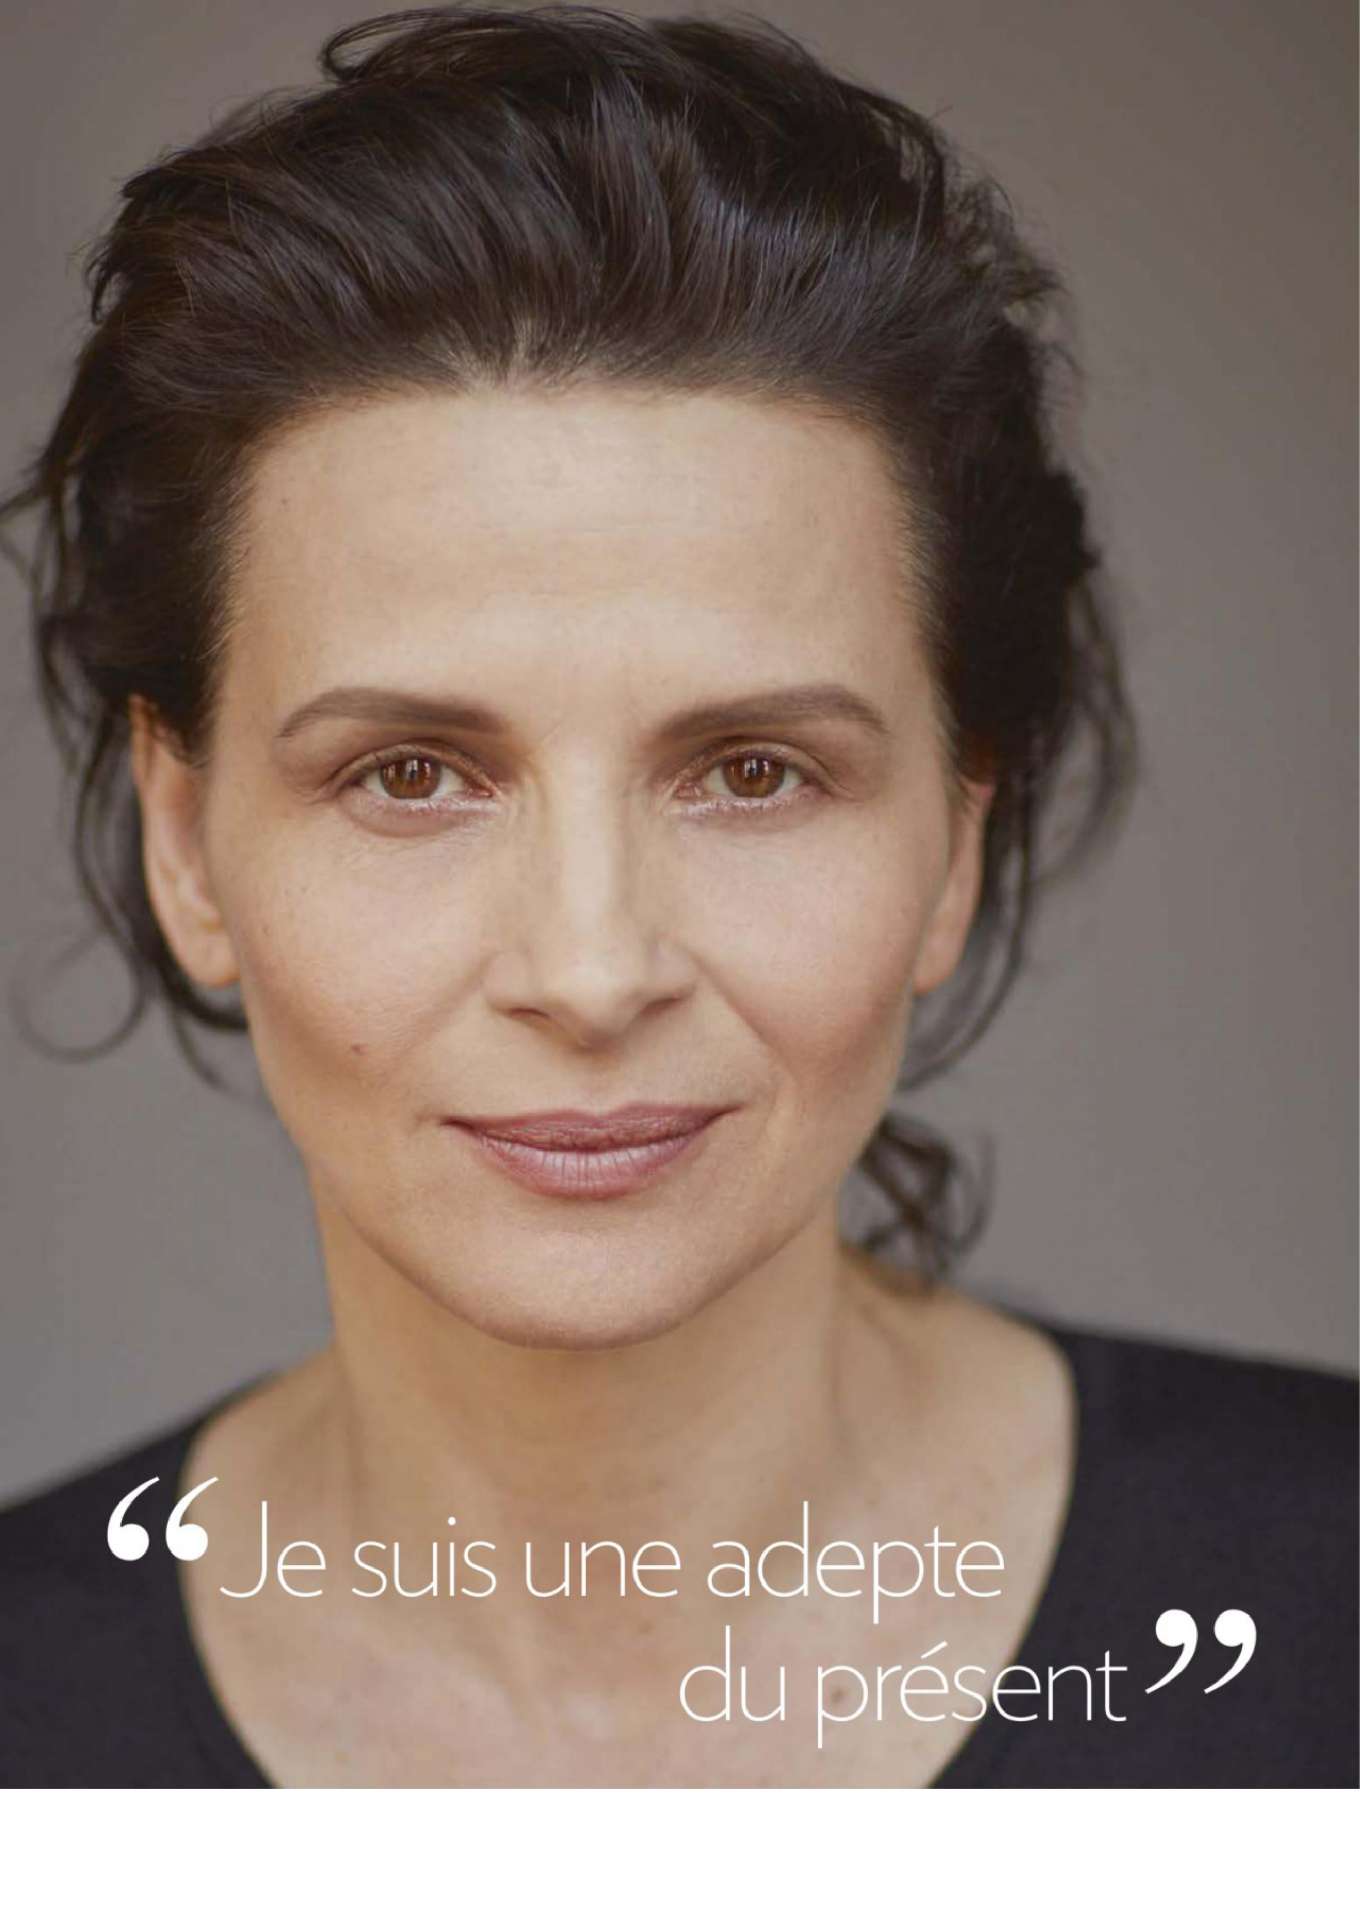 Juliette Binoche 2019 : Juliette Binoche – Psychologies France 2020-04